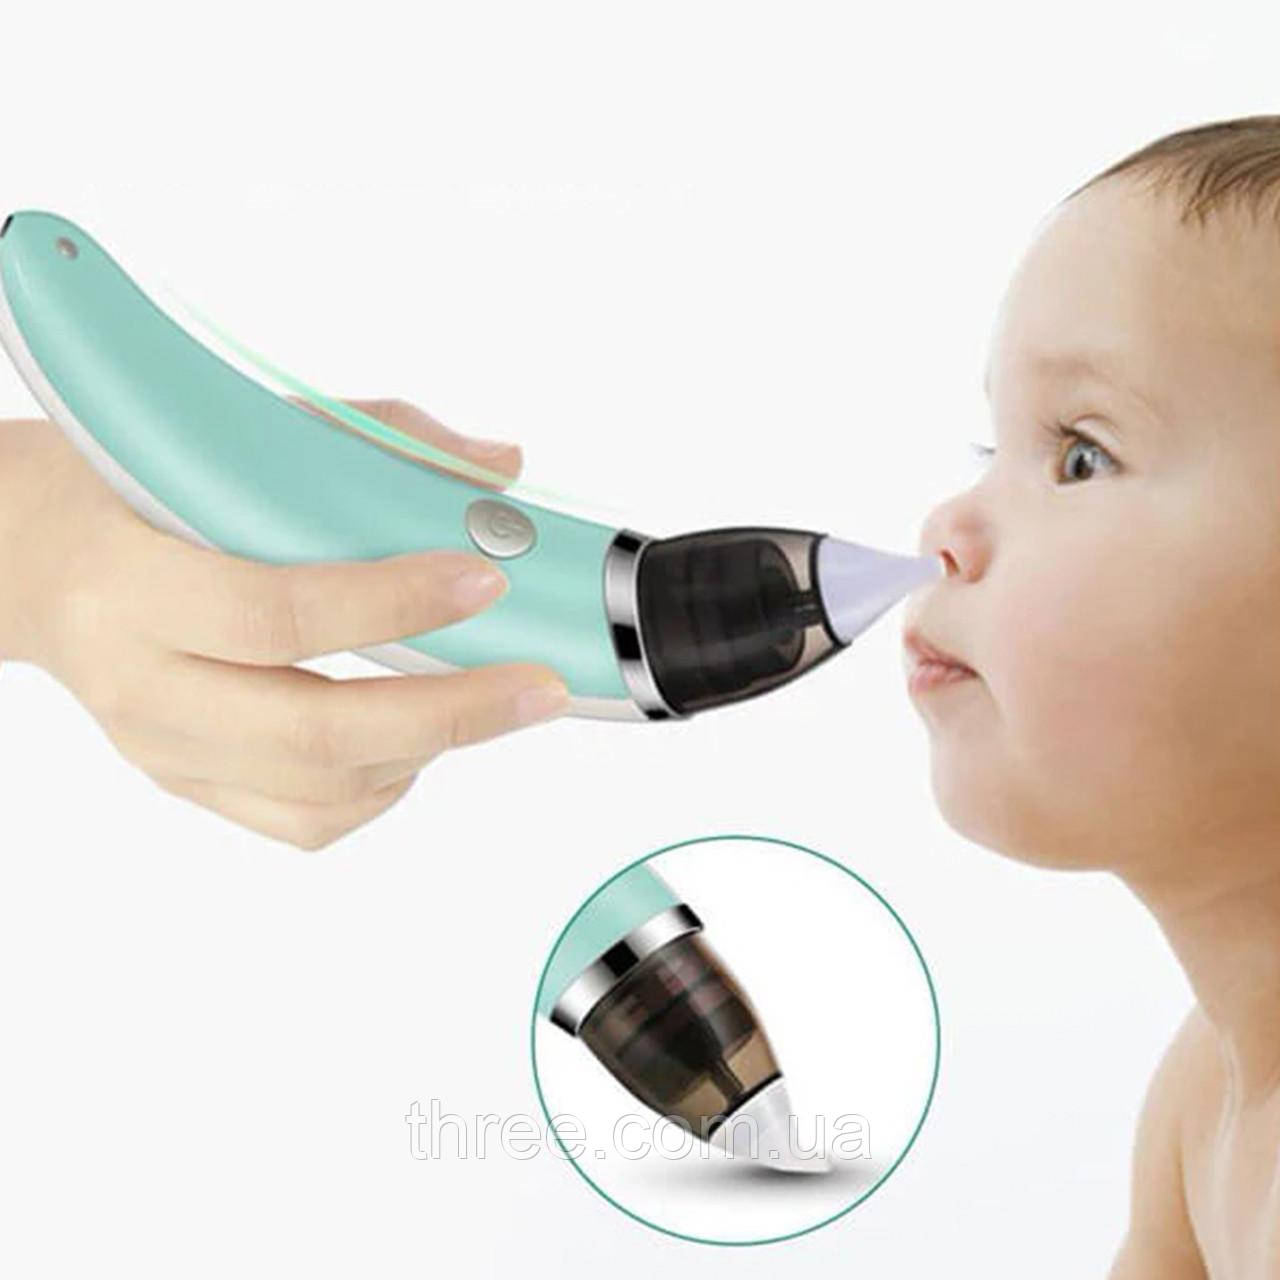 

Вакуумный отсасыватель для удаления соплей для носа новорожденных, аппарат для удаления соплей у детей XN-8031